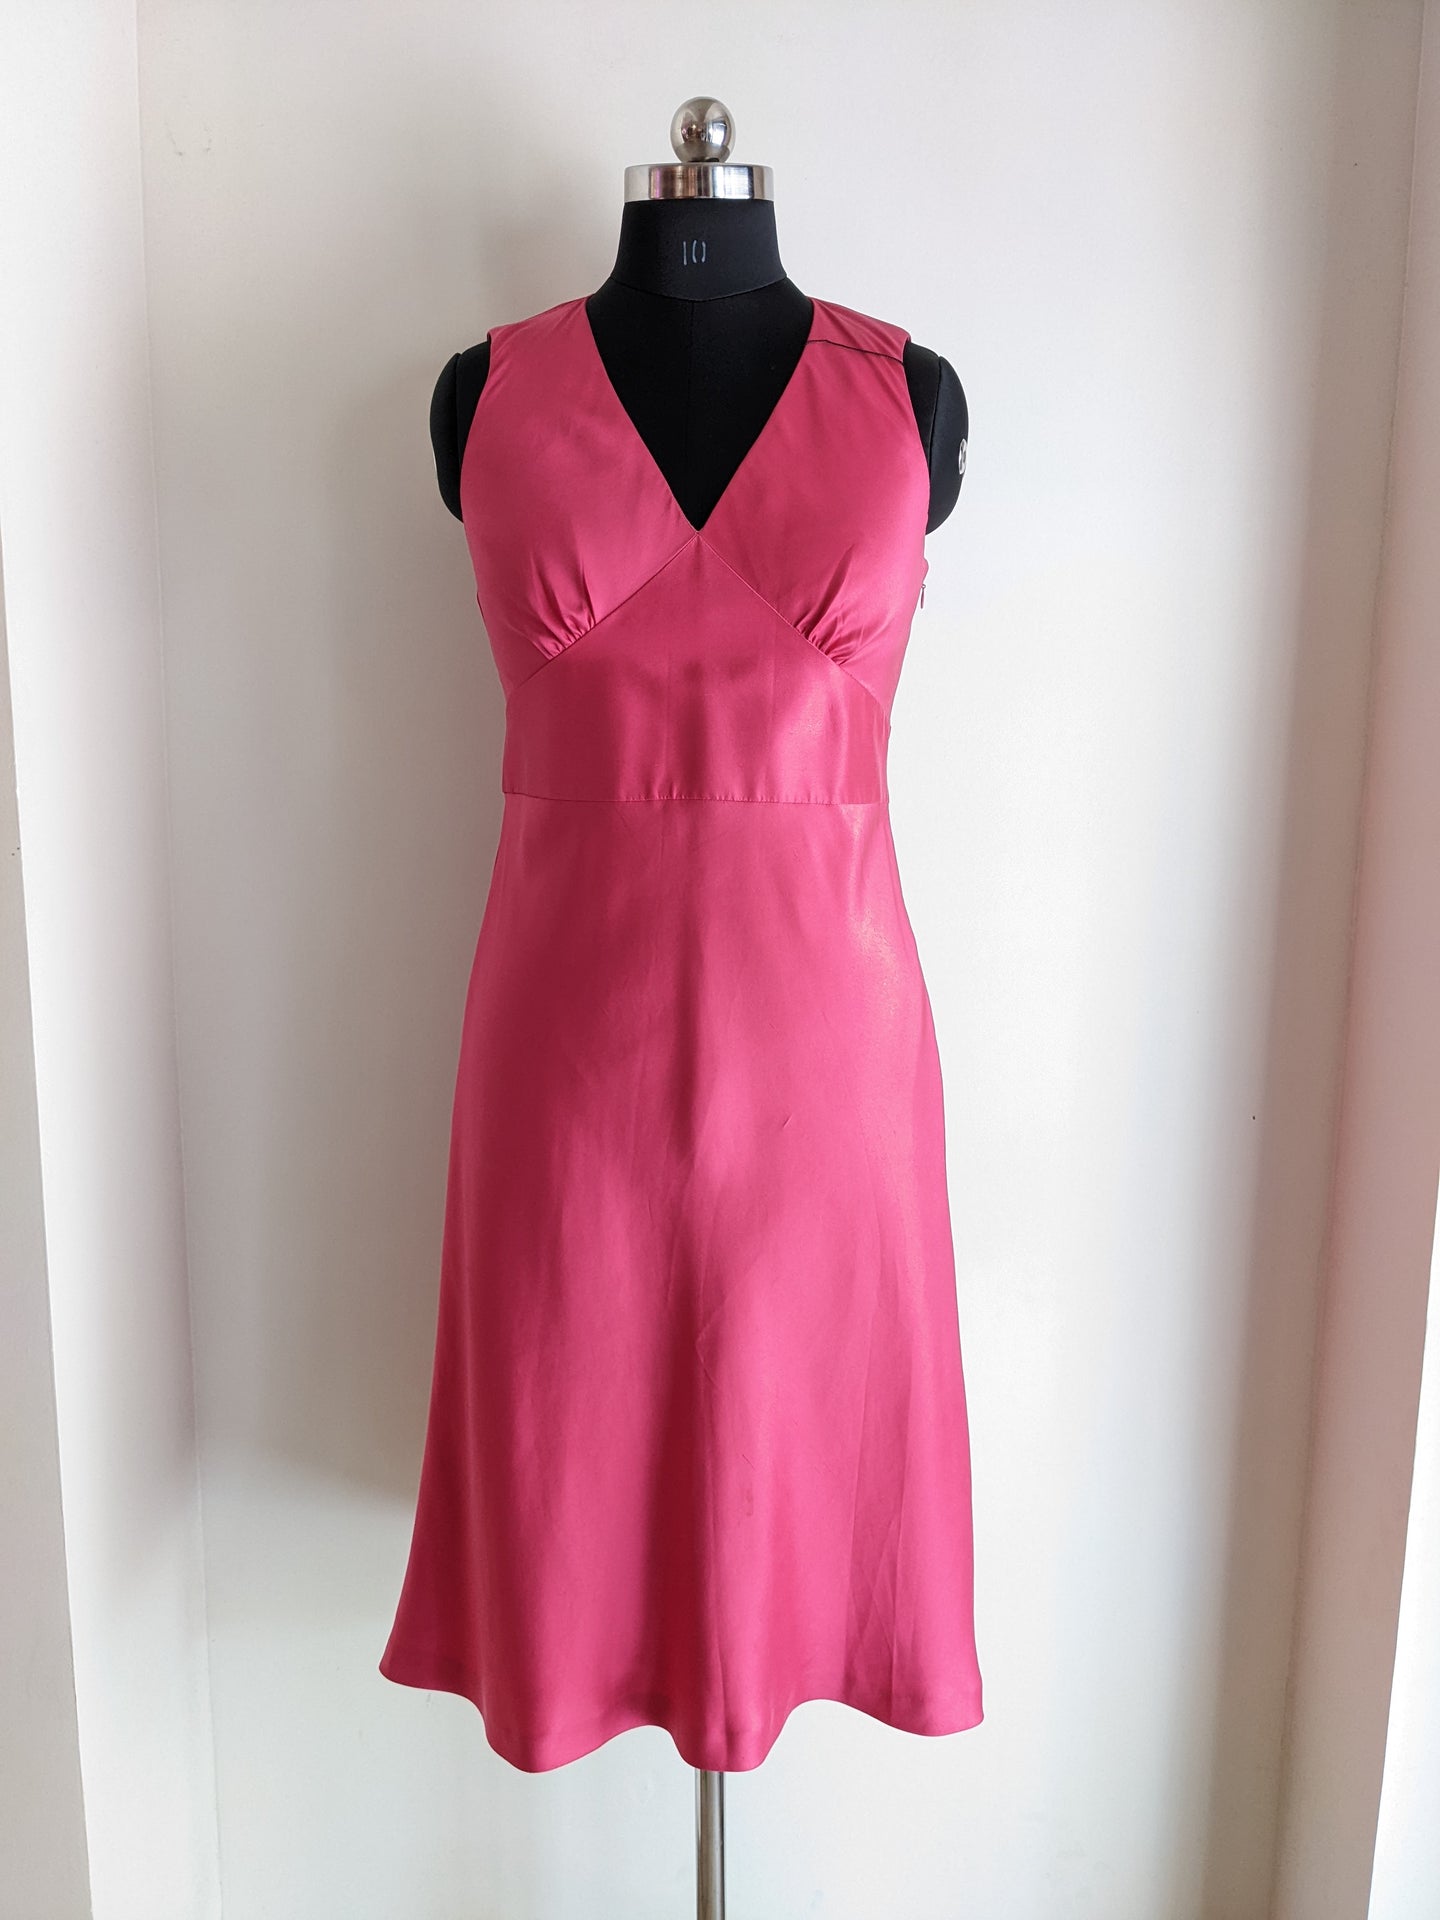 Ann Taylor Pink Sleeveless Dress